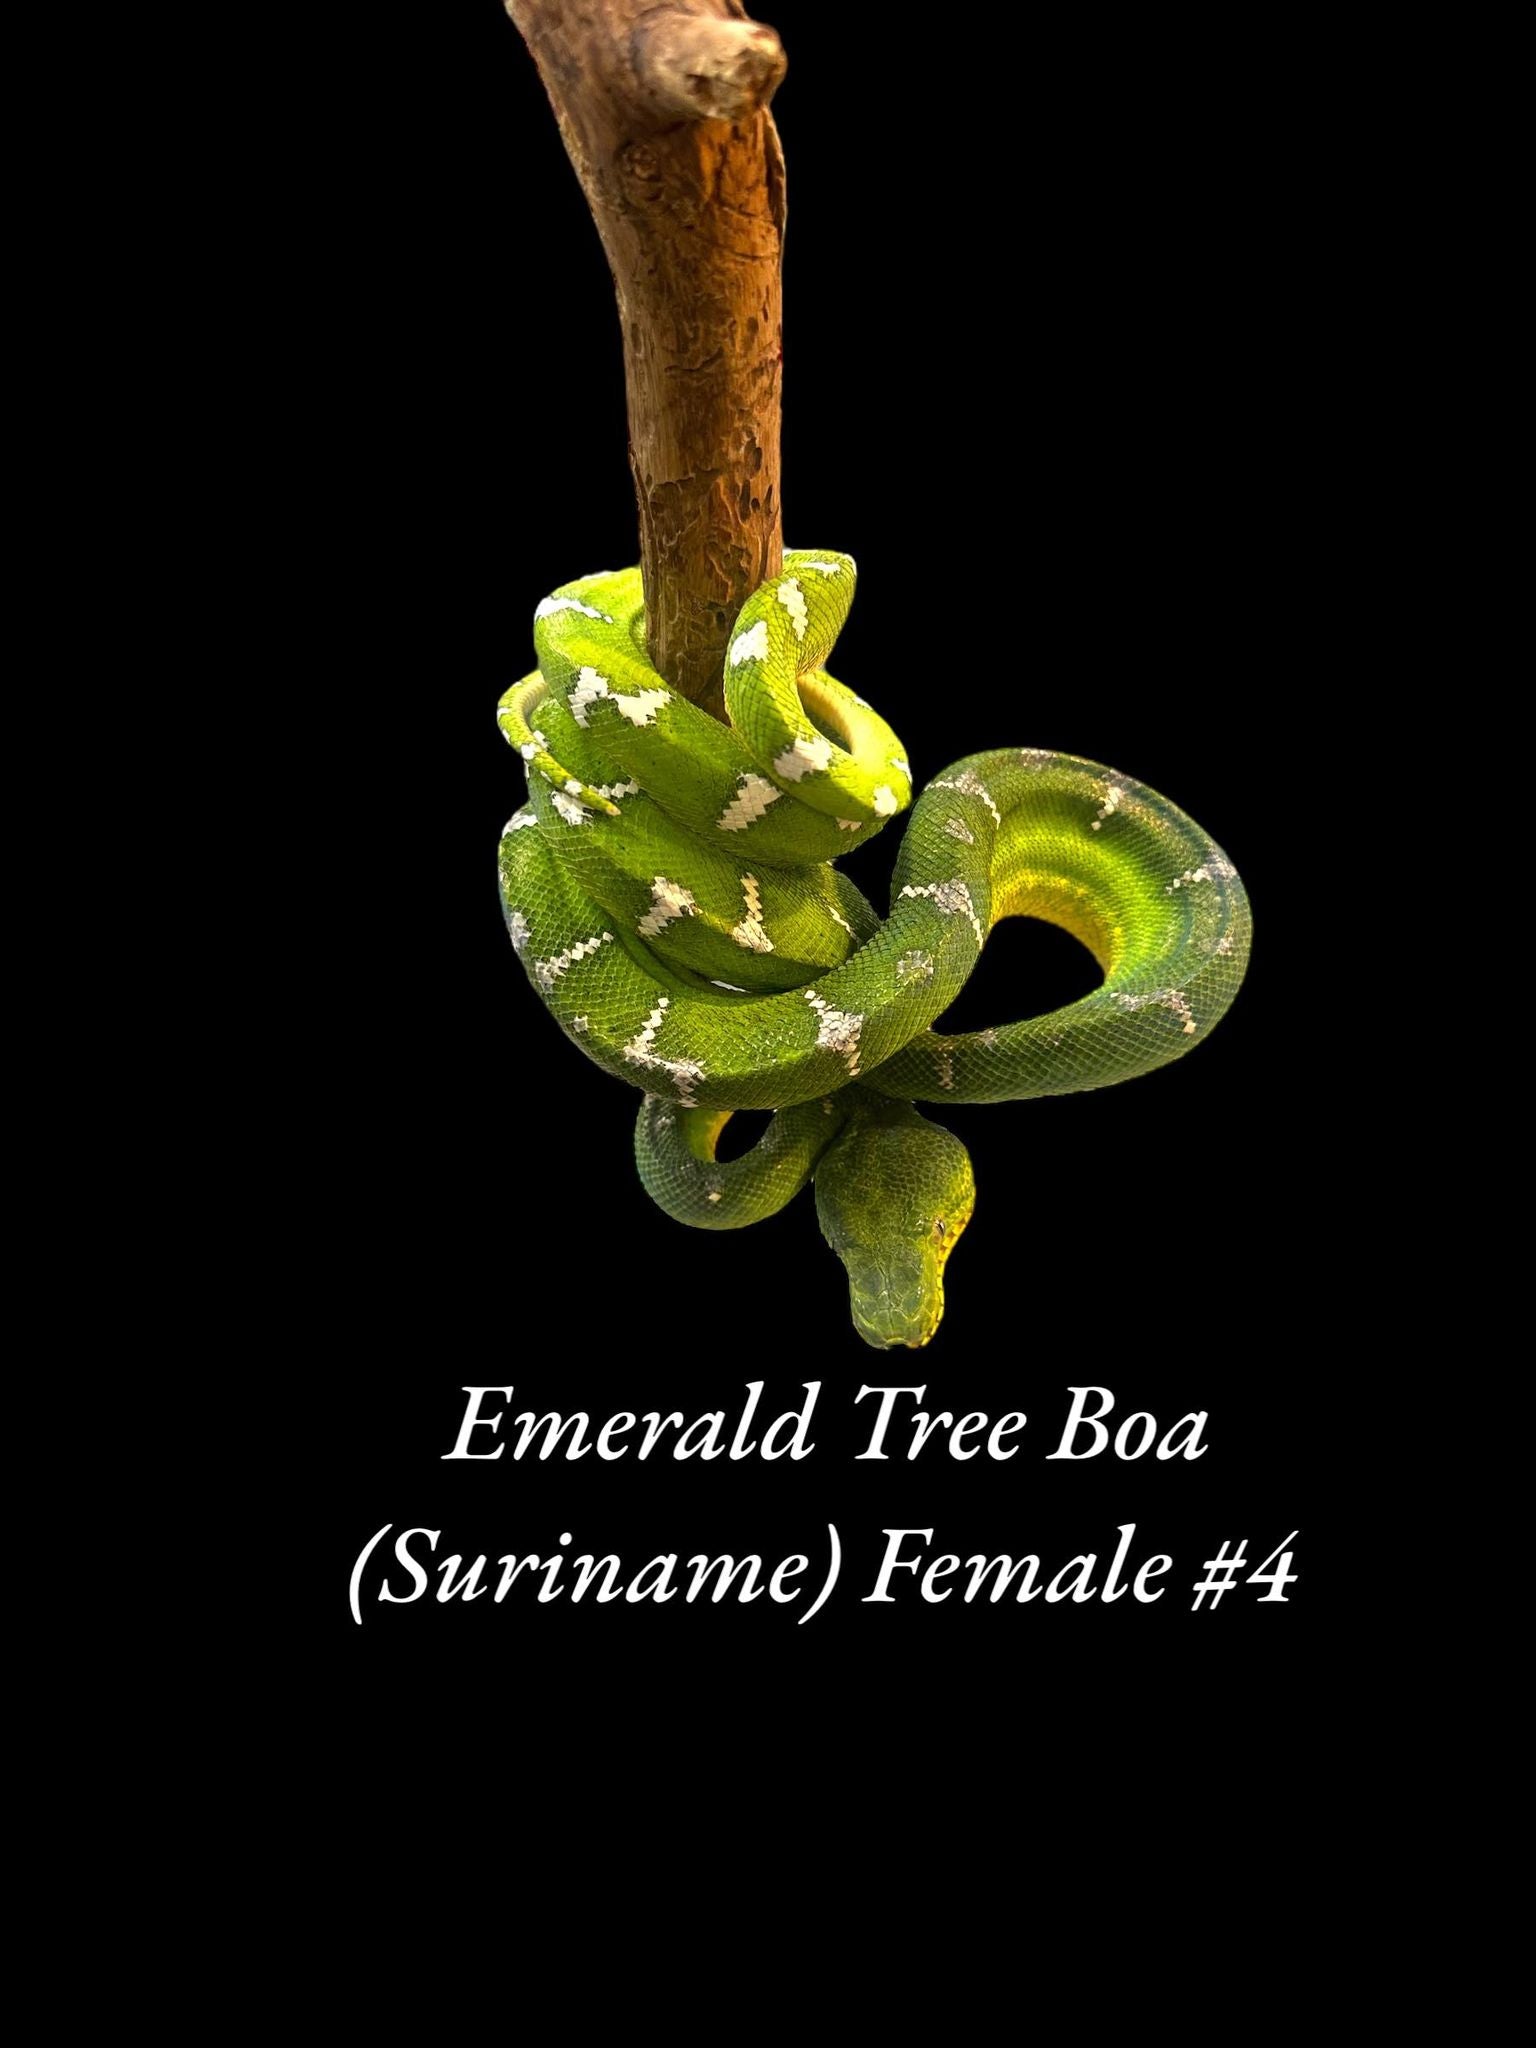 Emerald Tree Boa (Suriname)